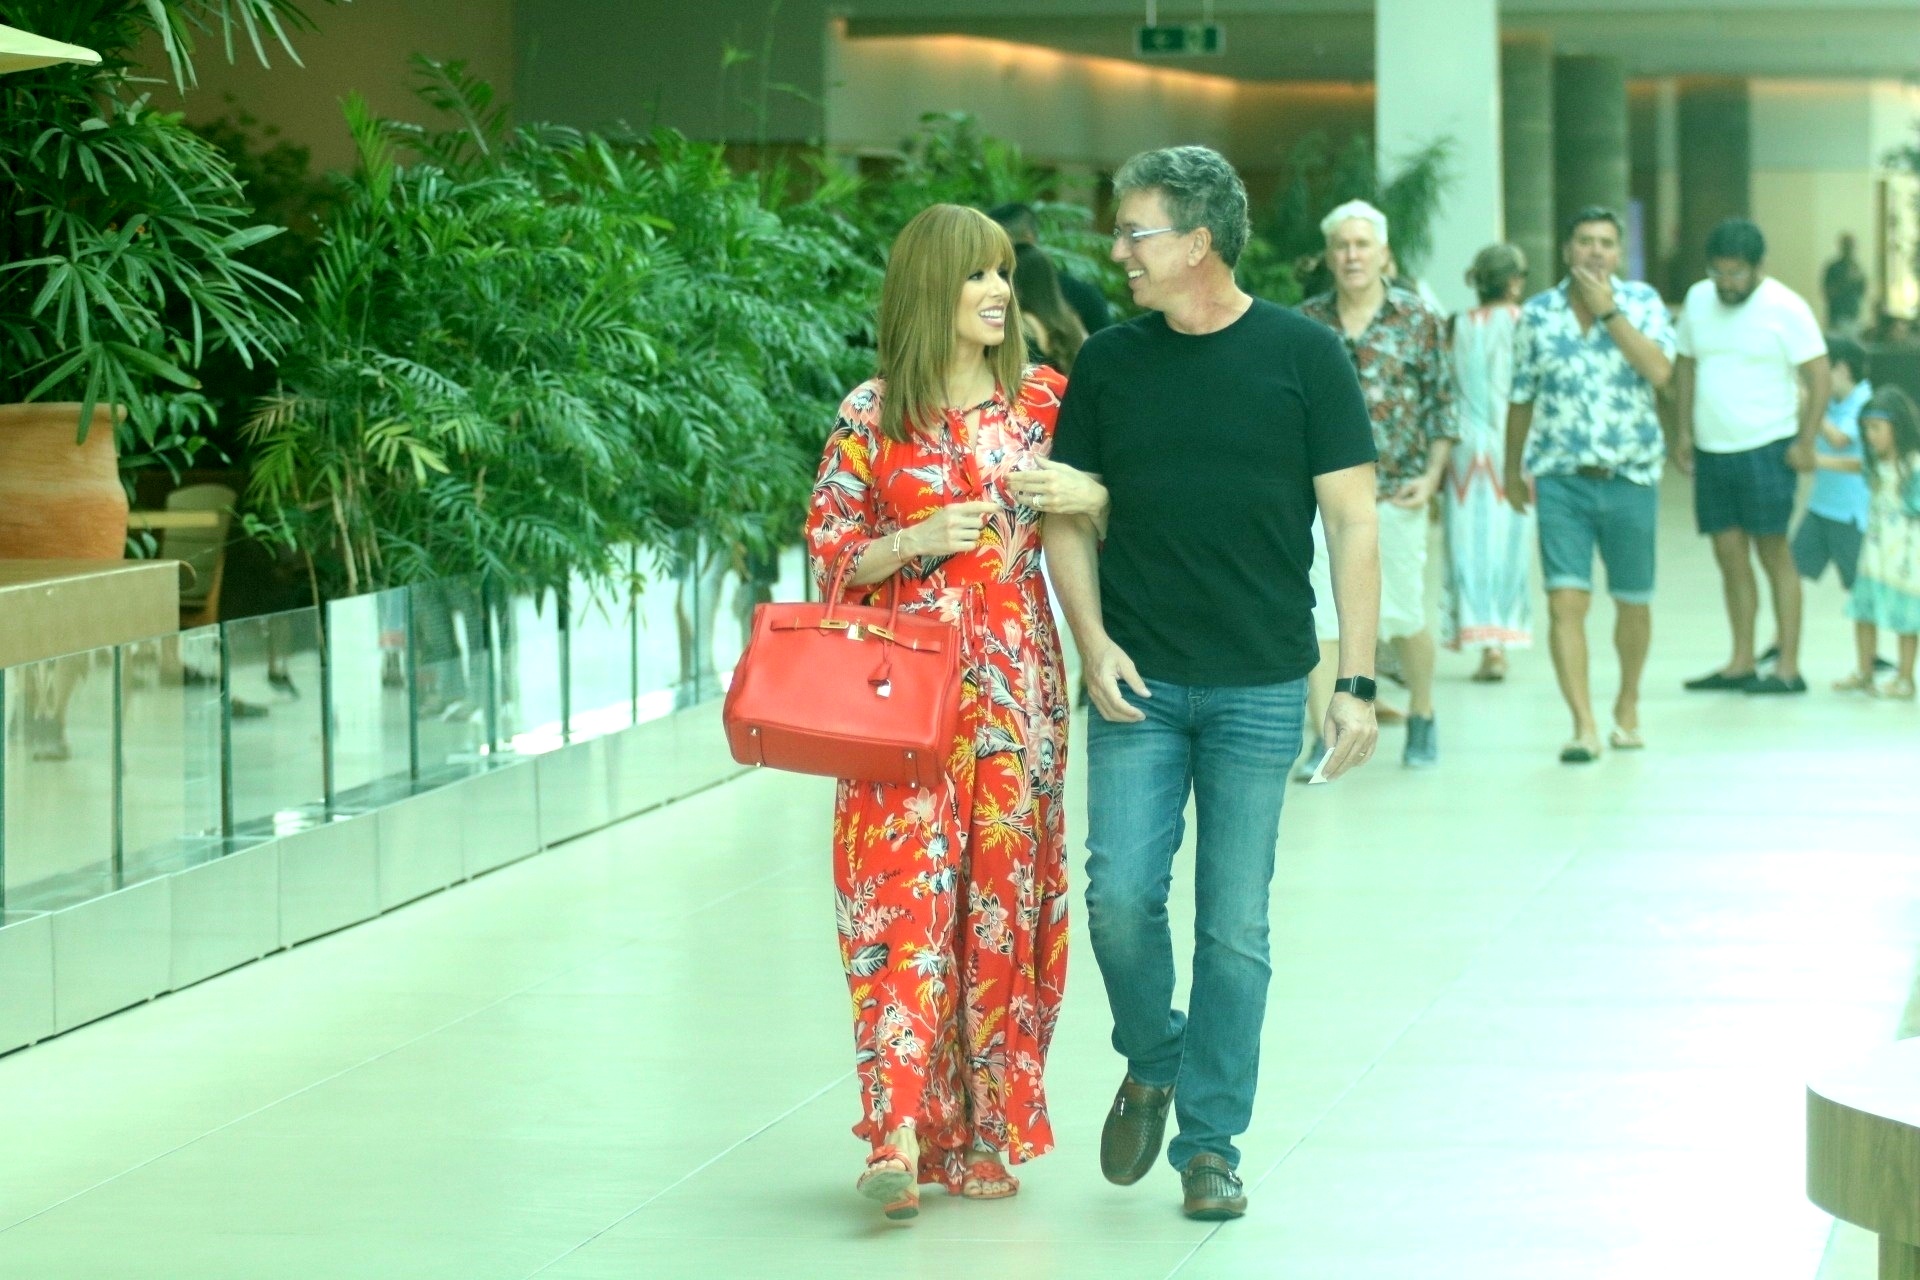 Sem economizar sorrisos, o casal esbanjou simpatia durante um passeio no shopping